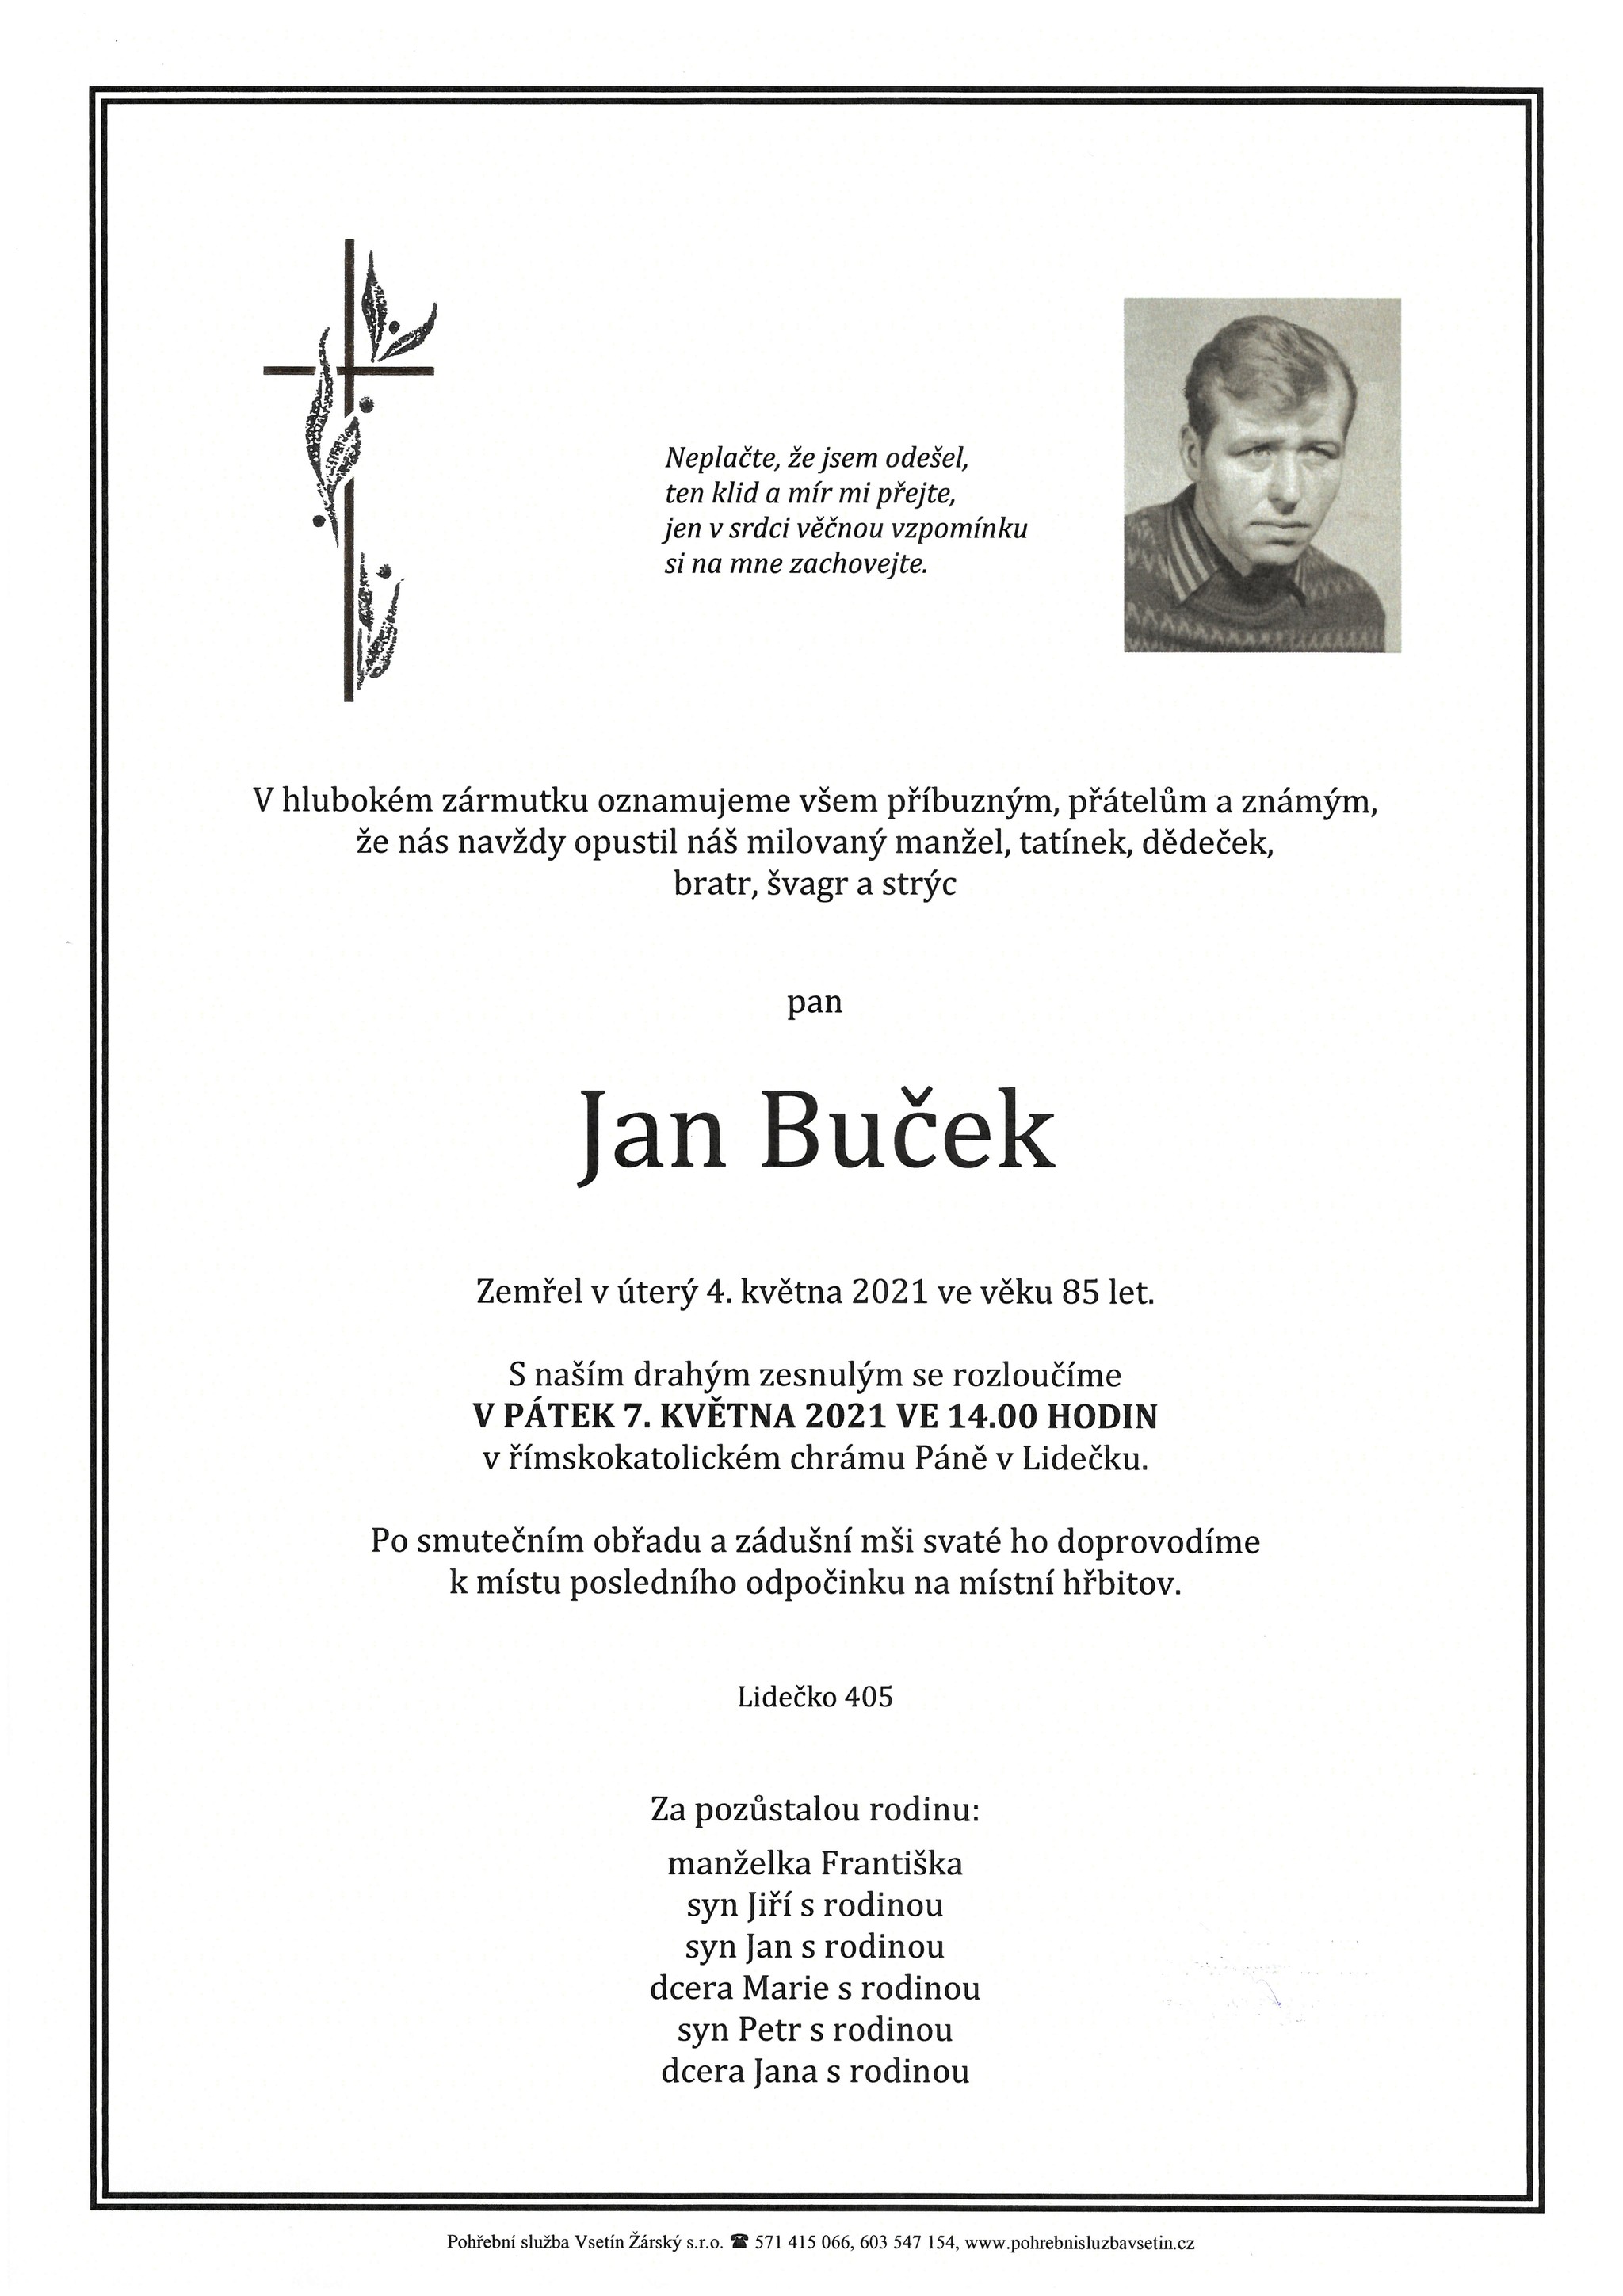 Jan Buček